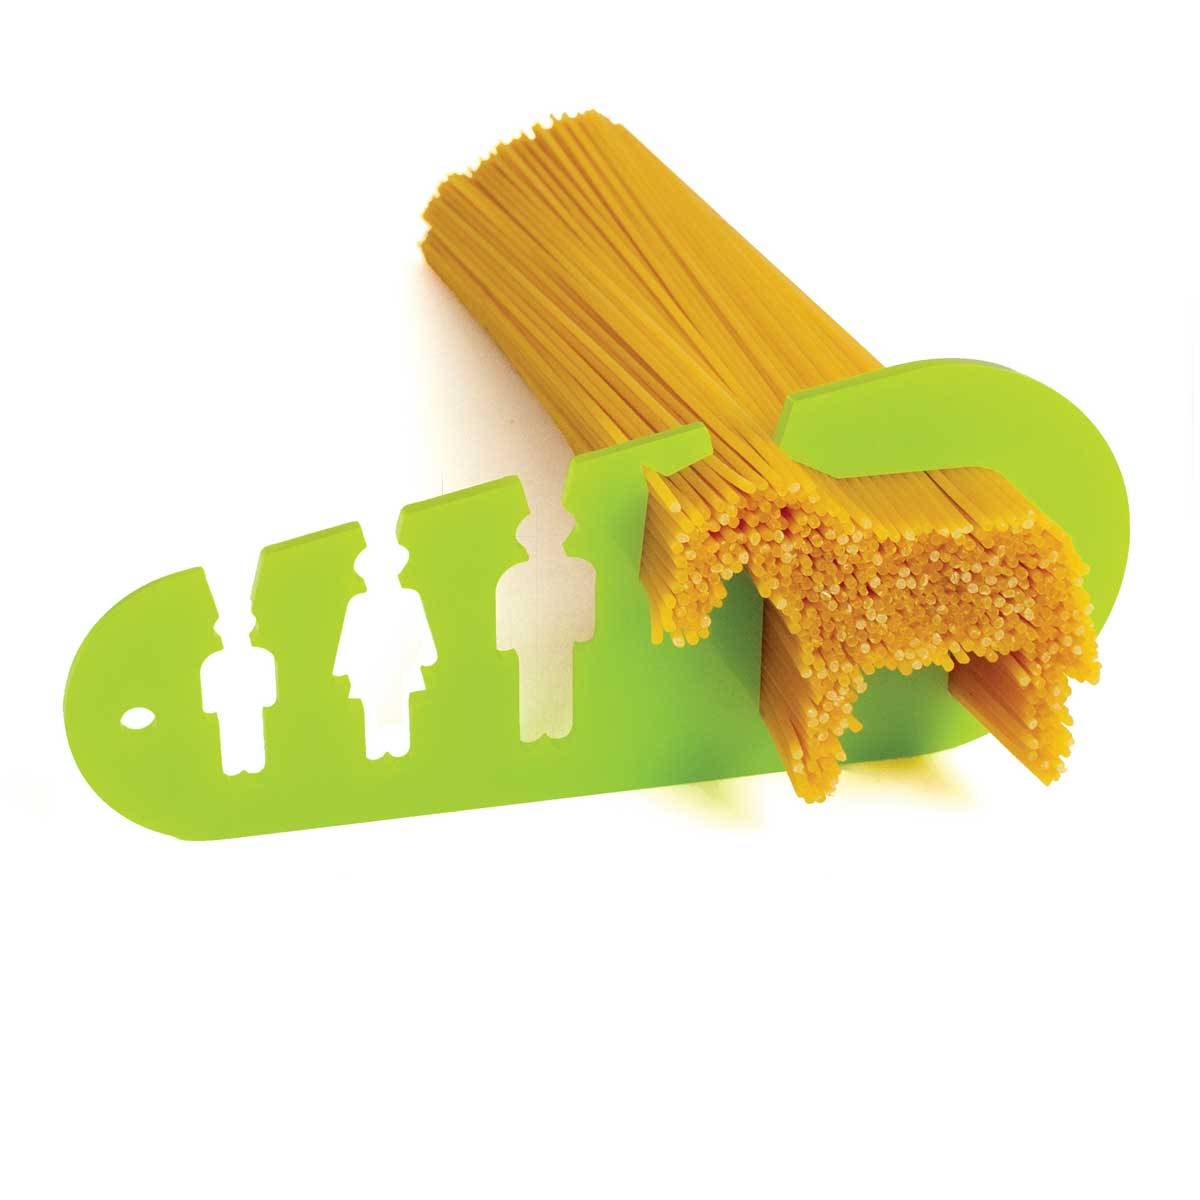 pasta measurer tool 